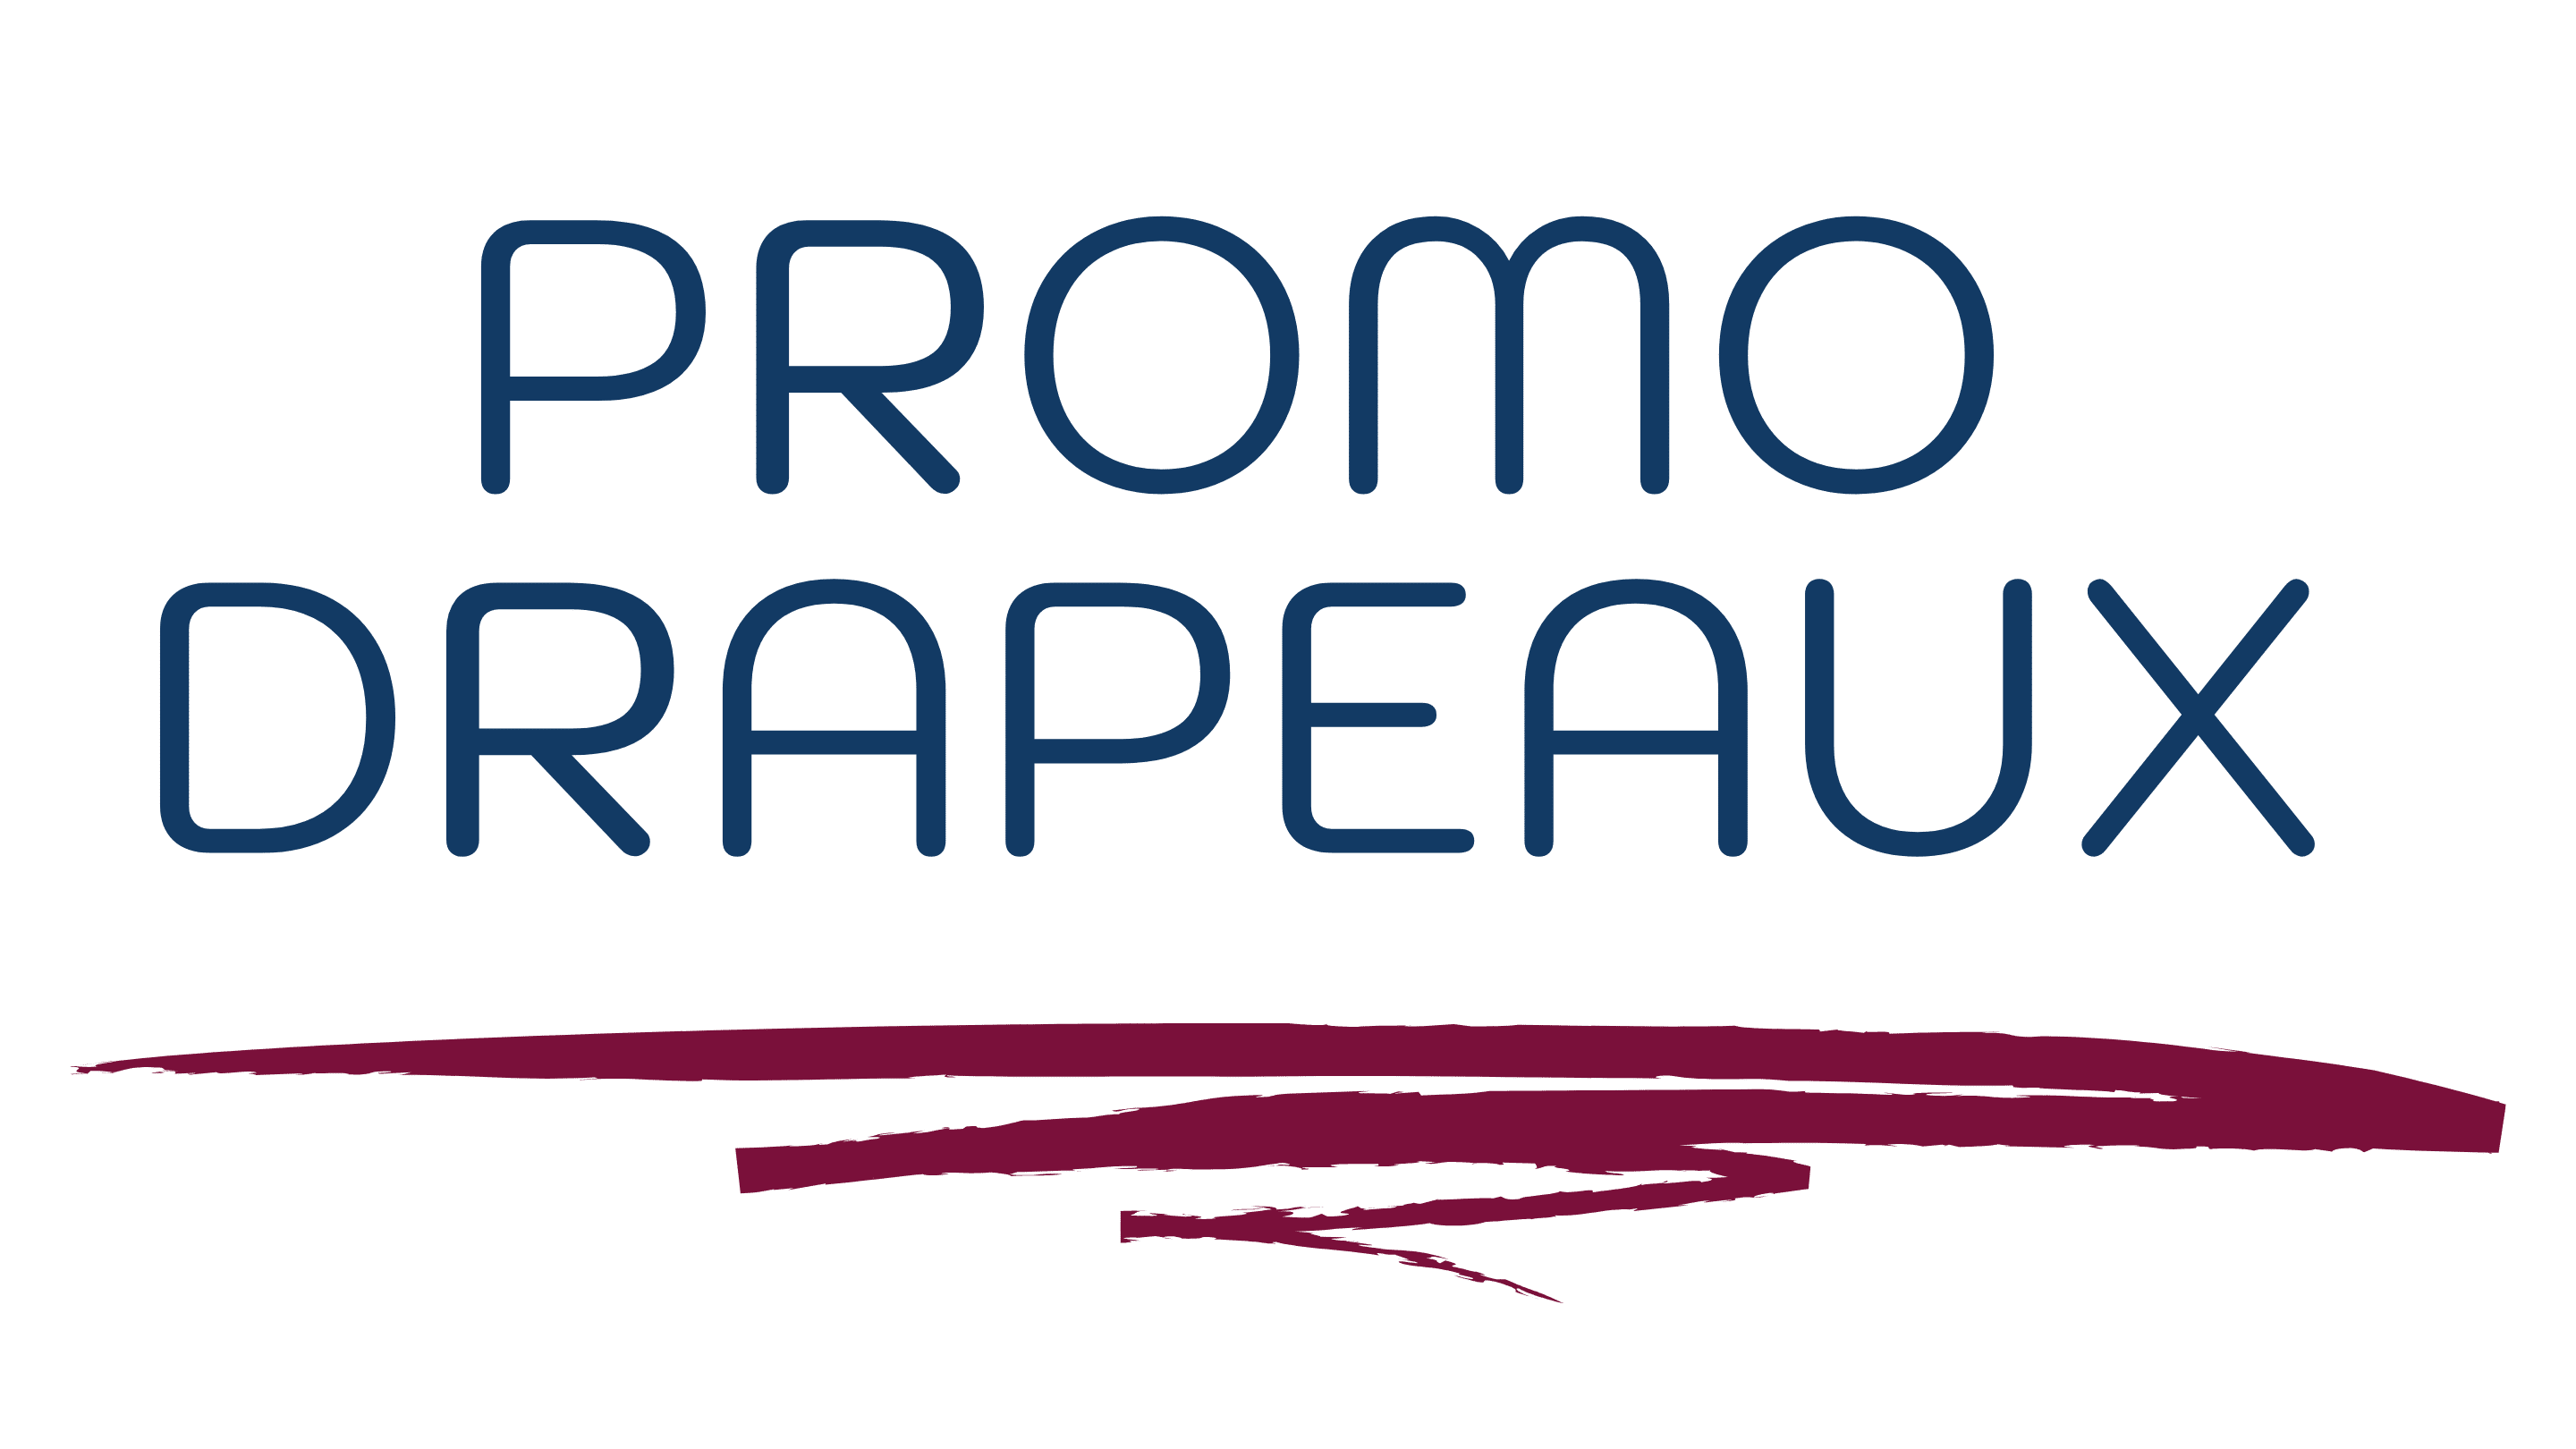 Soldes Drapeaux du Monde - Nouvelle version (02088) 2024 au